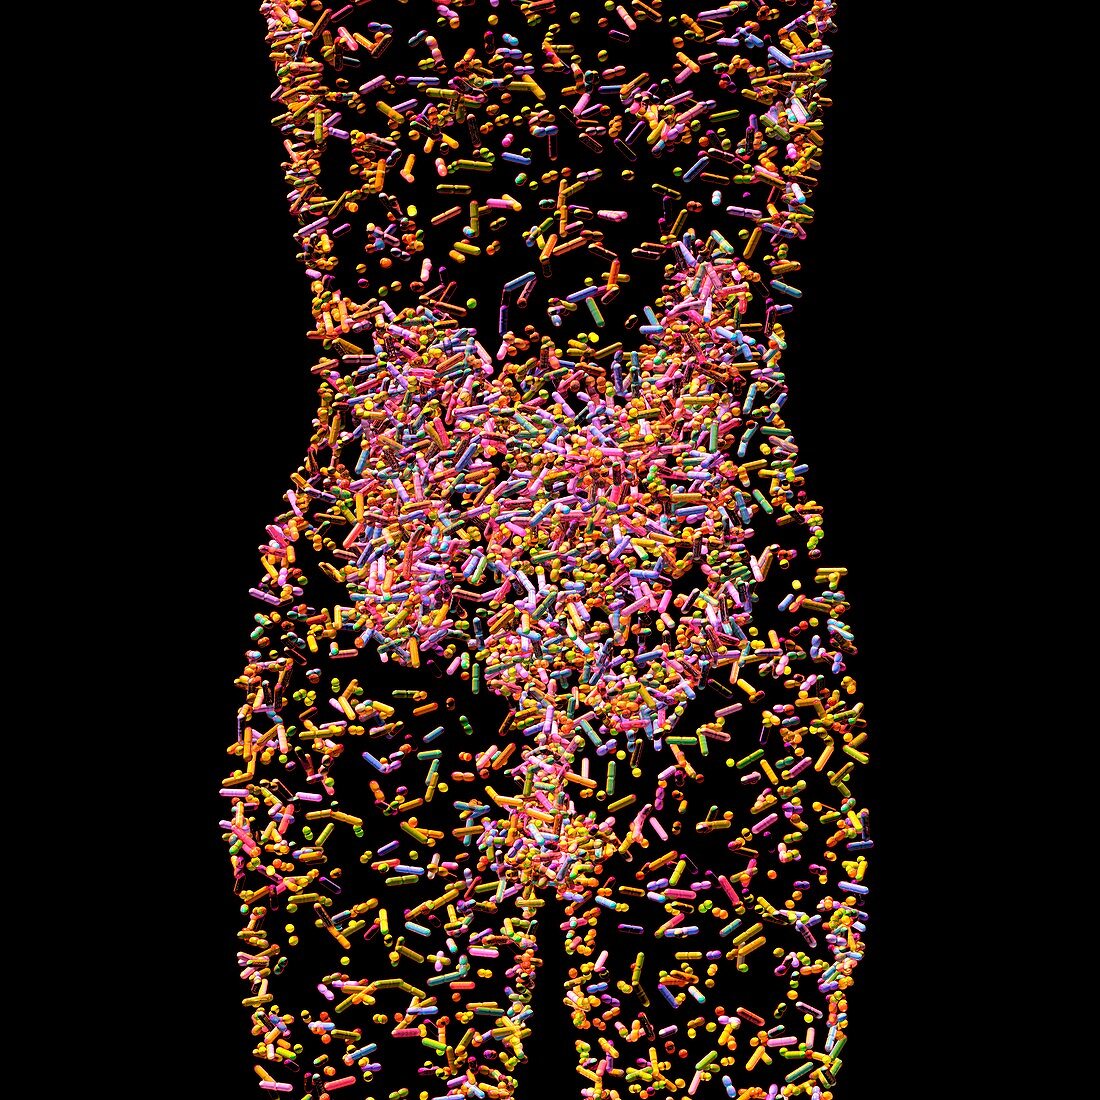 Human microbiome, conceptual image